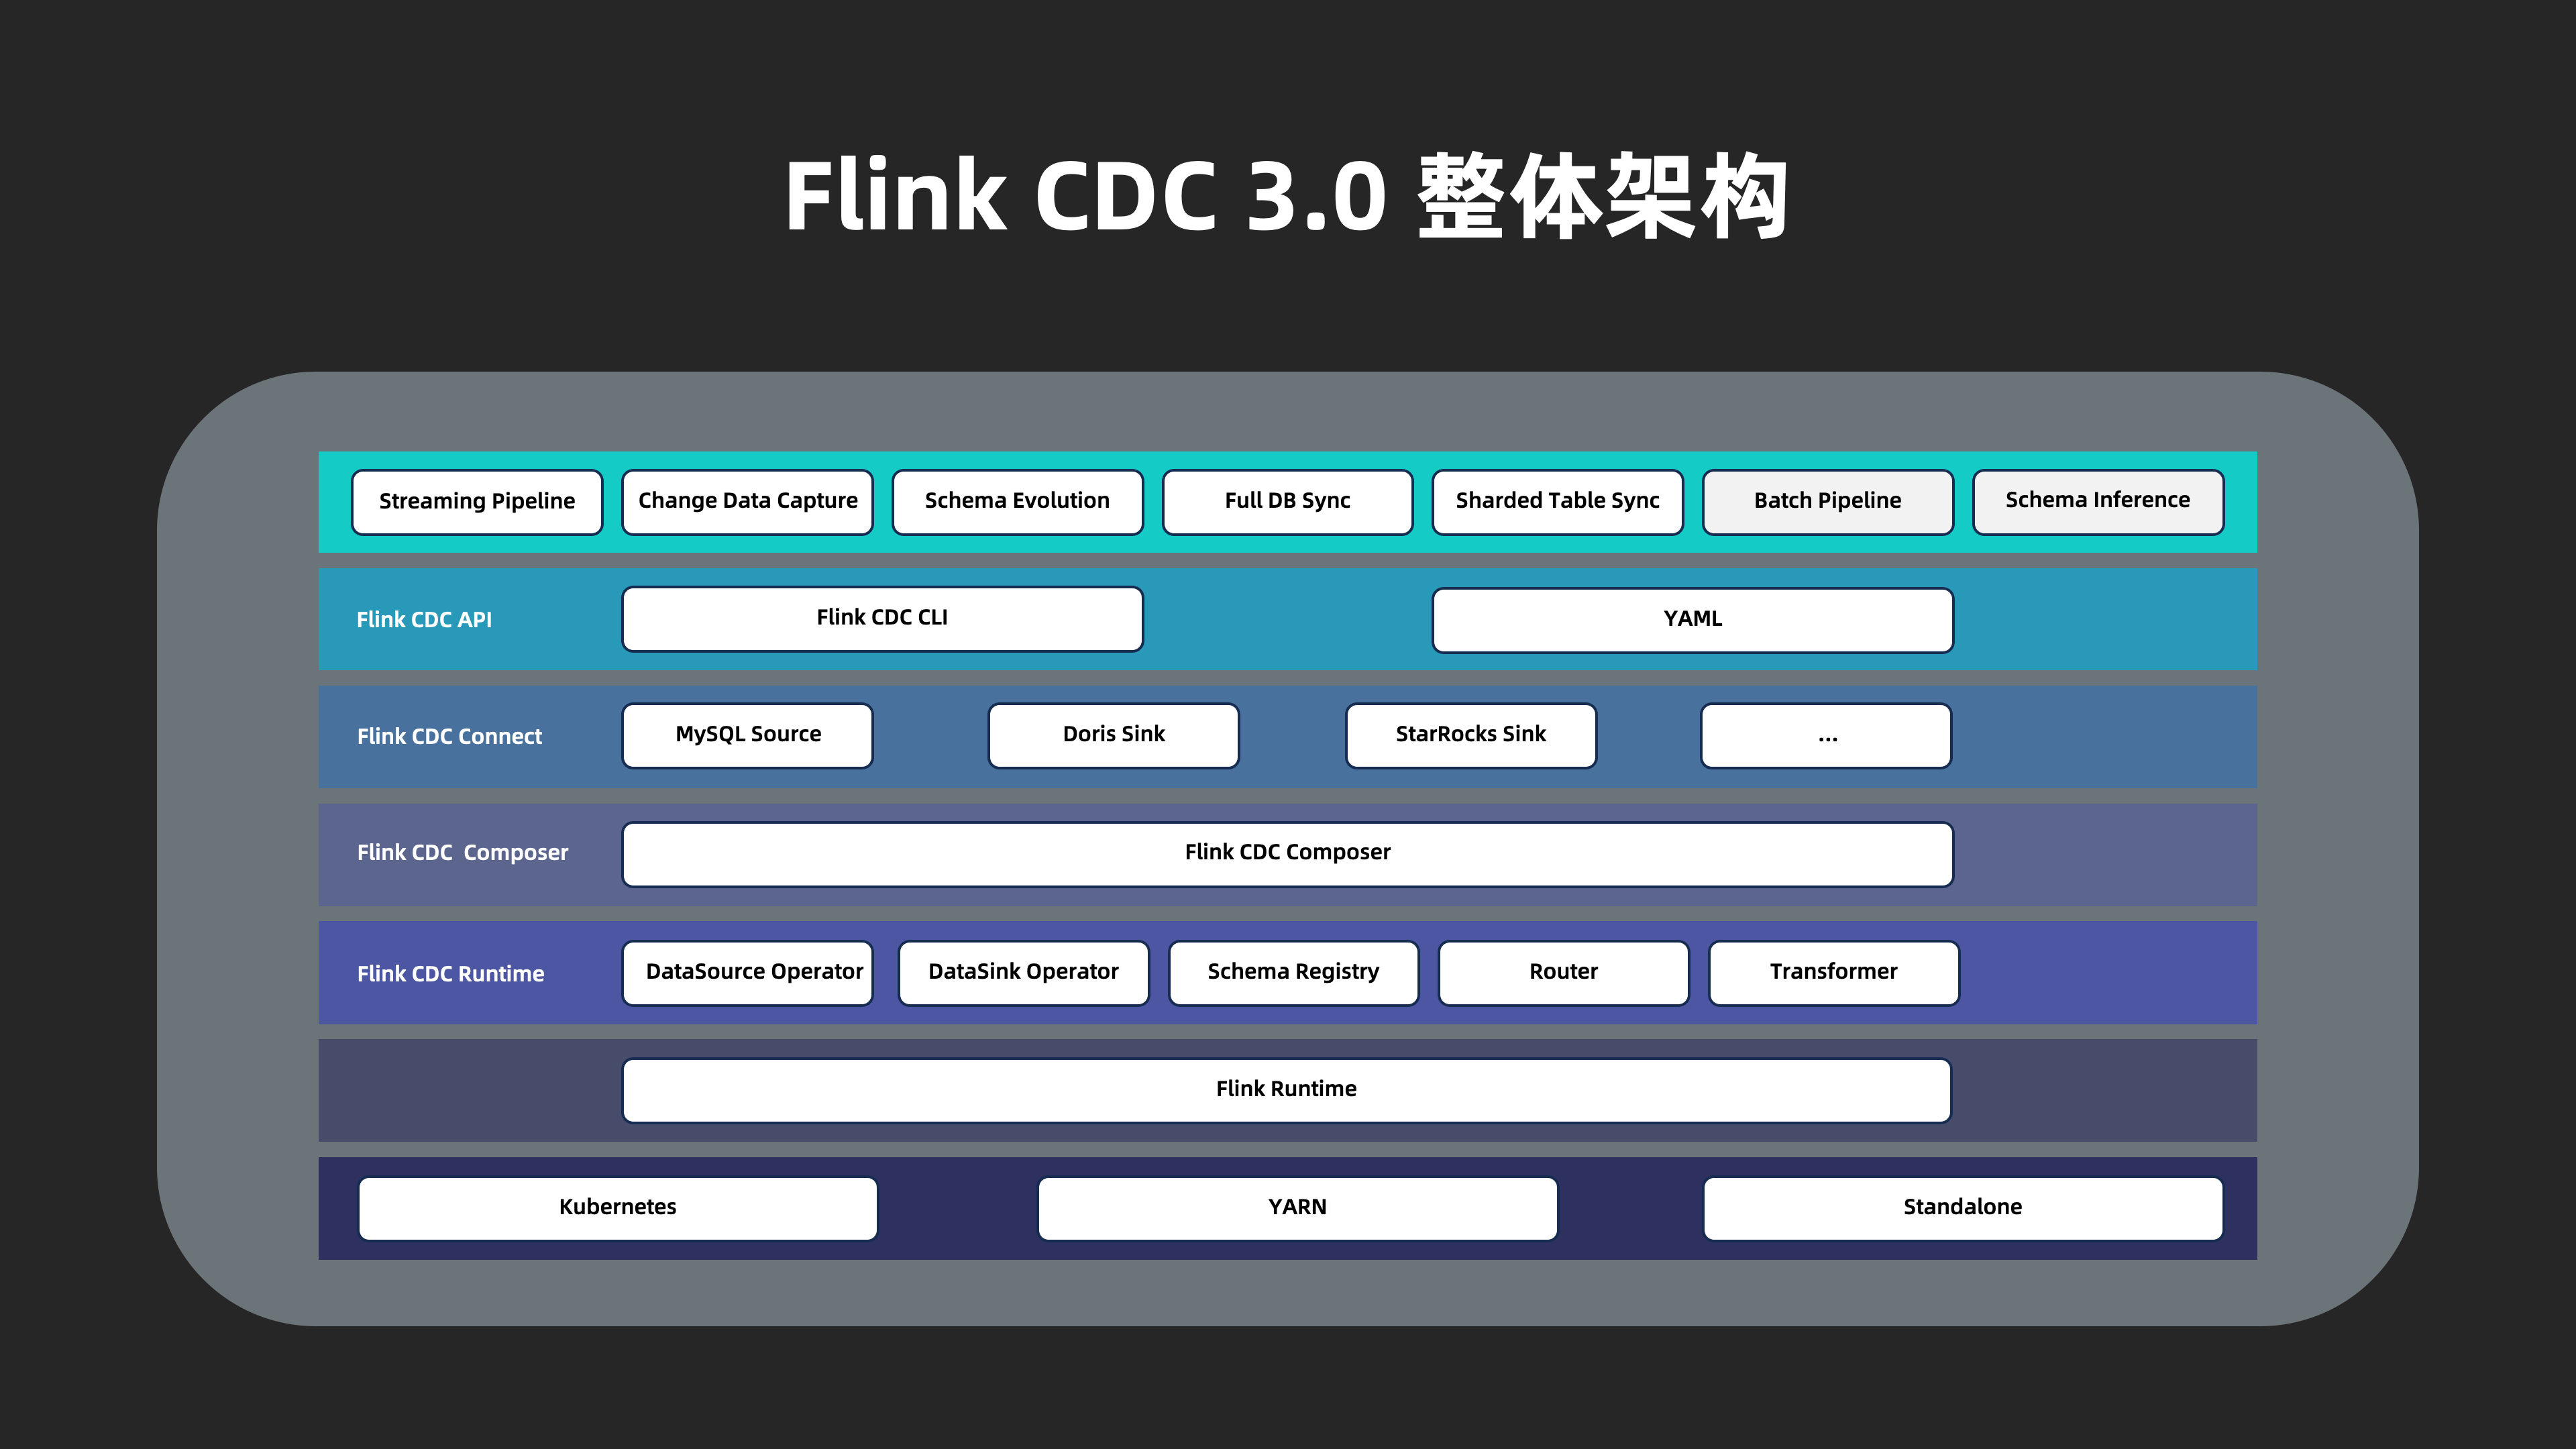 新一代实时数据集成框架 Flink CDC 3.0 —— 核心技术架构解析